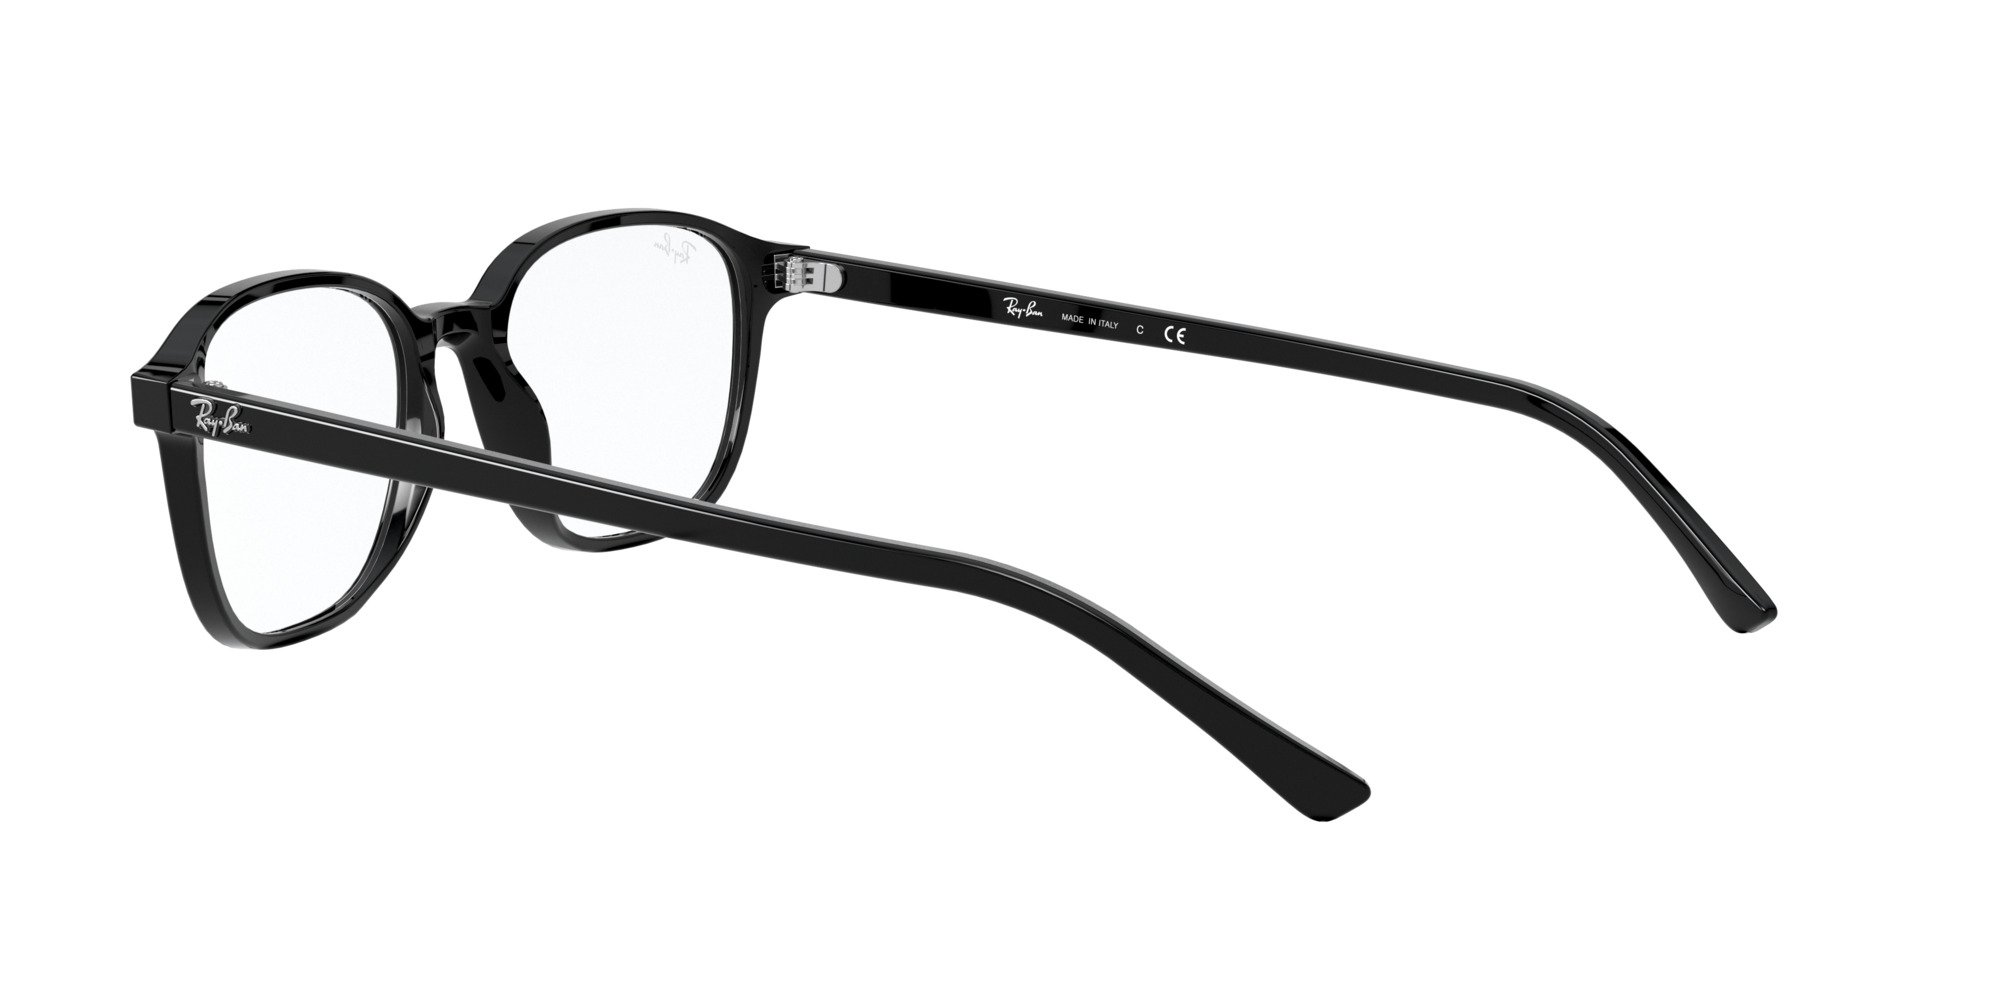 Das Bild zeigt die Korrektionsbrille RX5393 2000 von der Marke Ray Ban in schwarz.